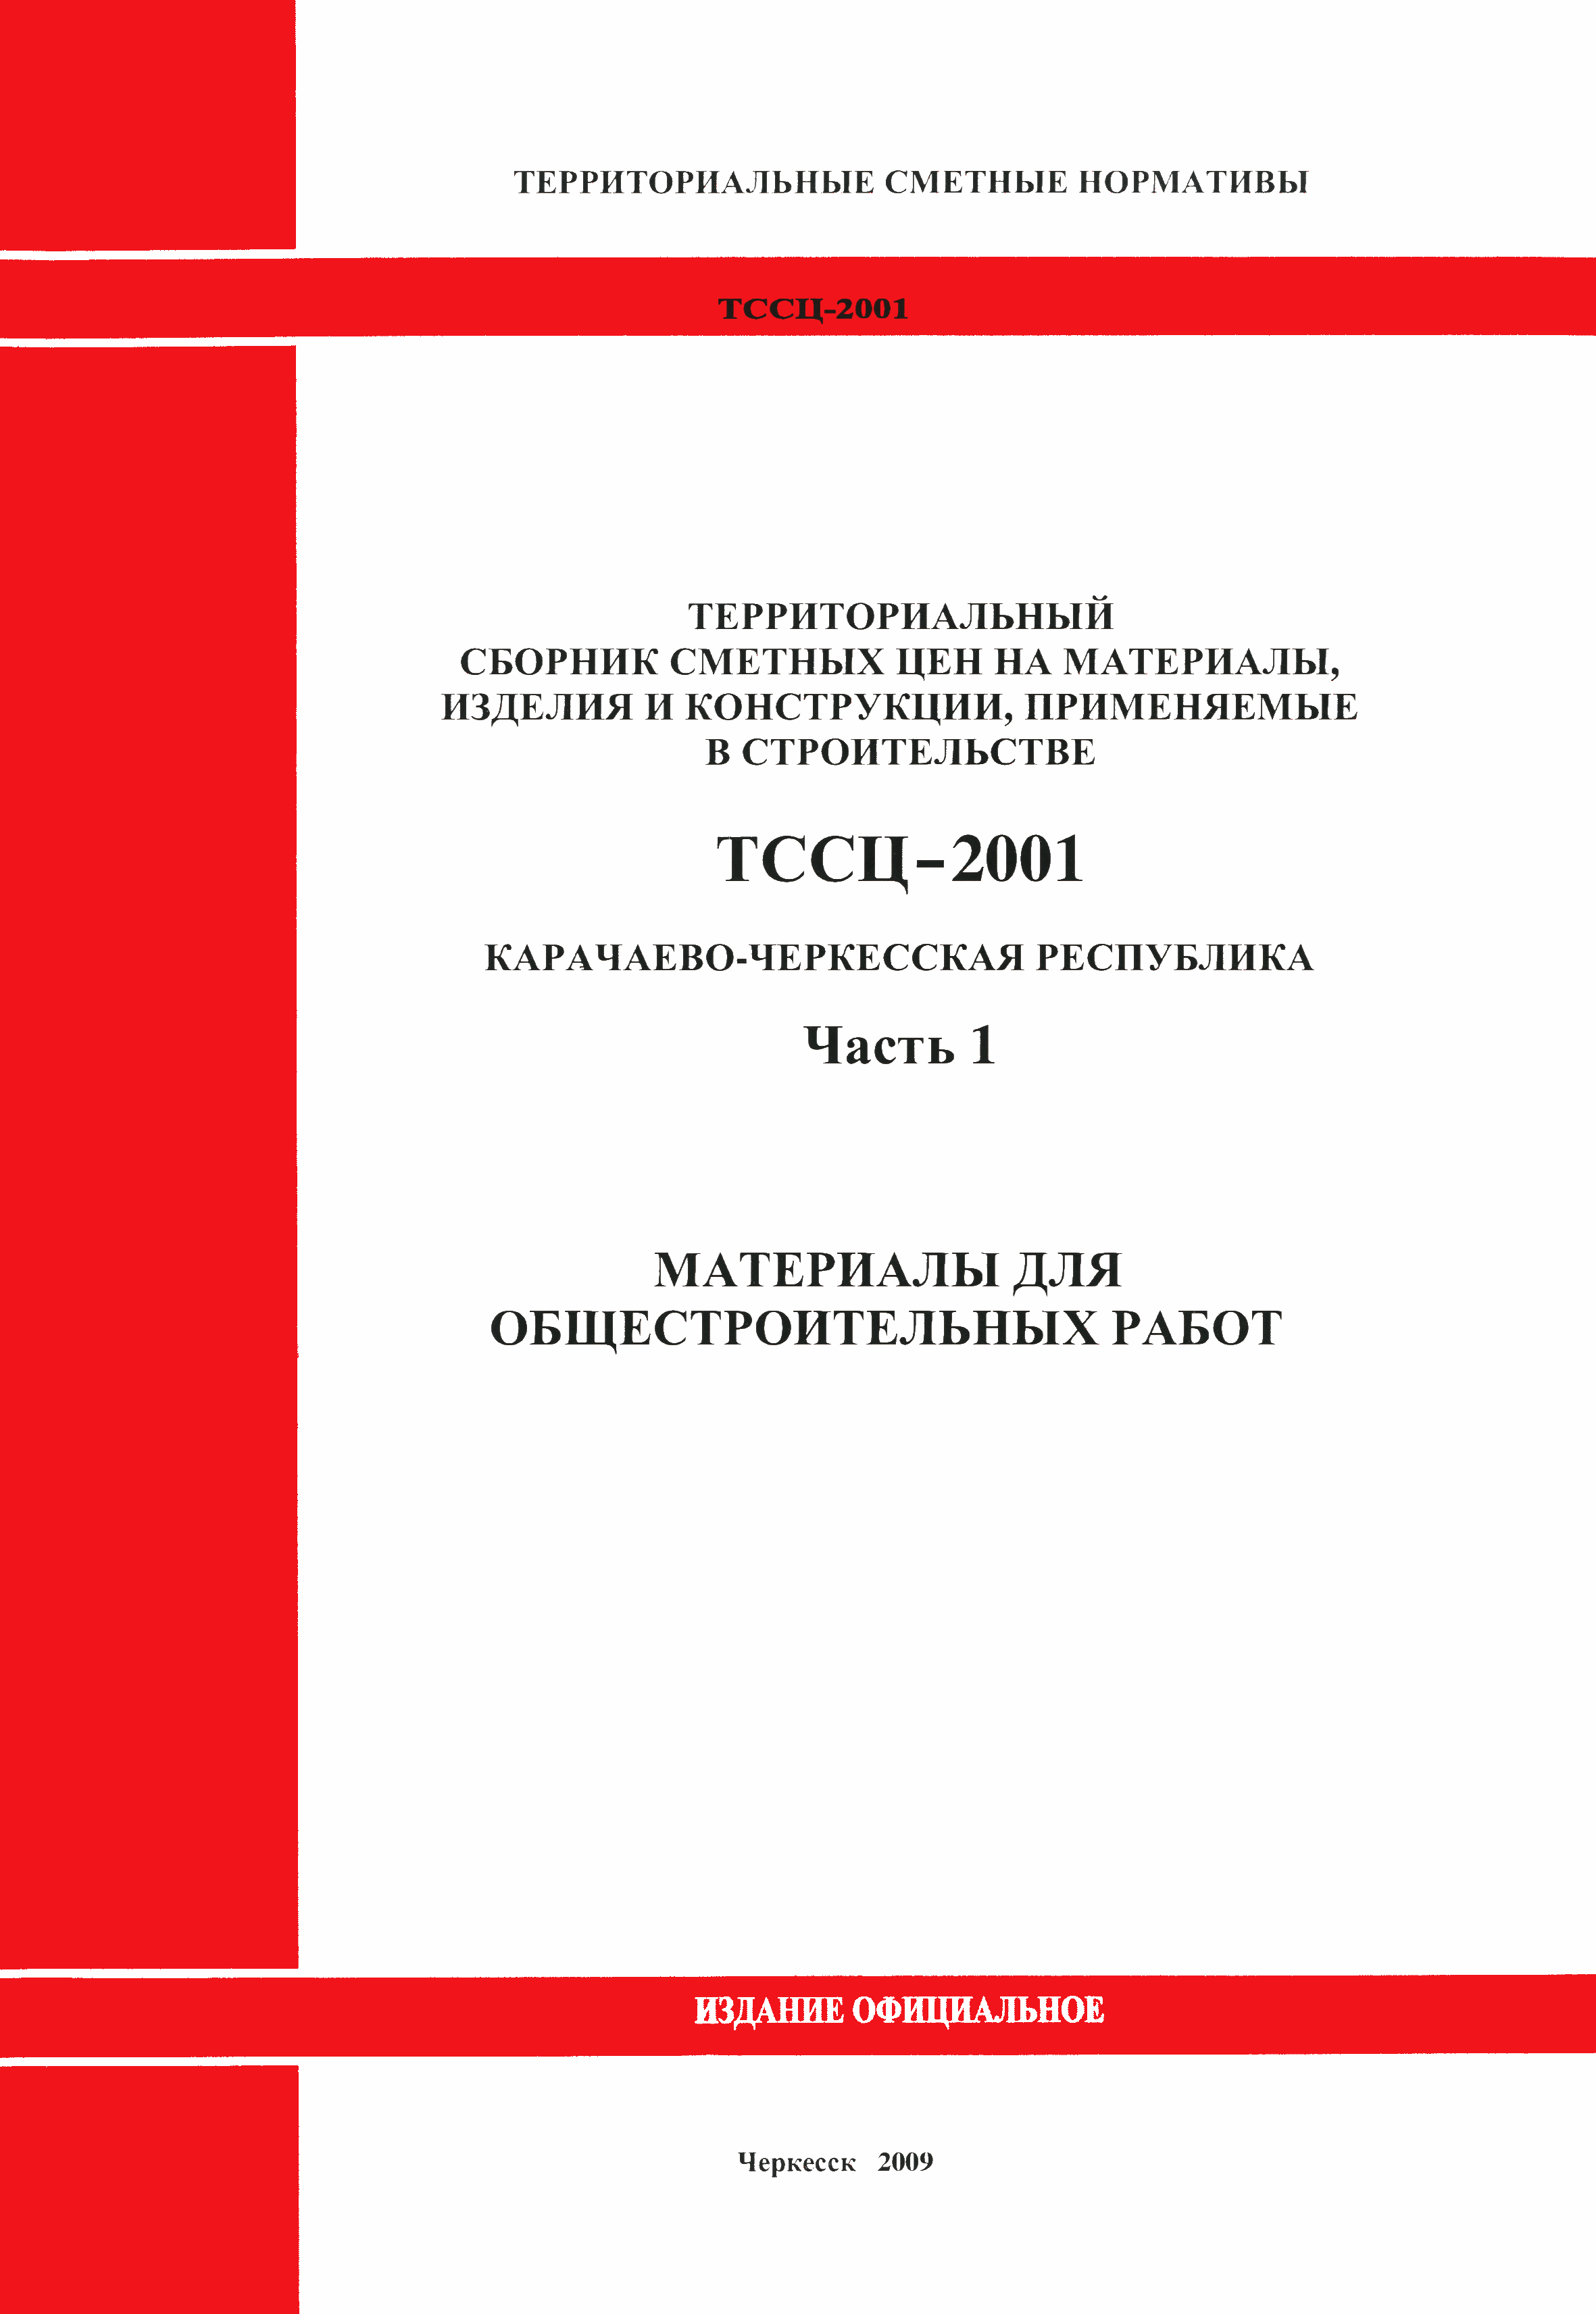 ТССЦ Карачаево-Черкесская Республика 01-2001